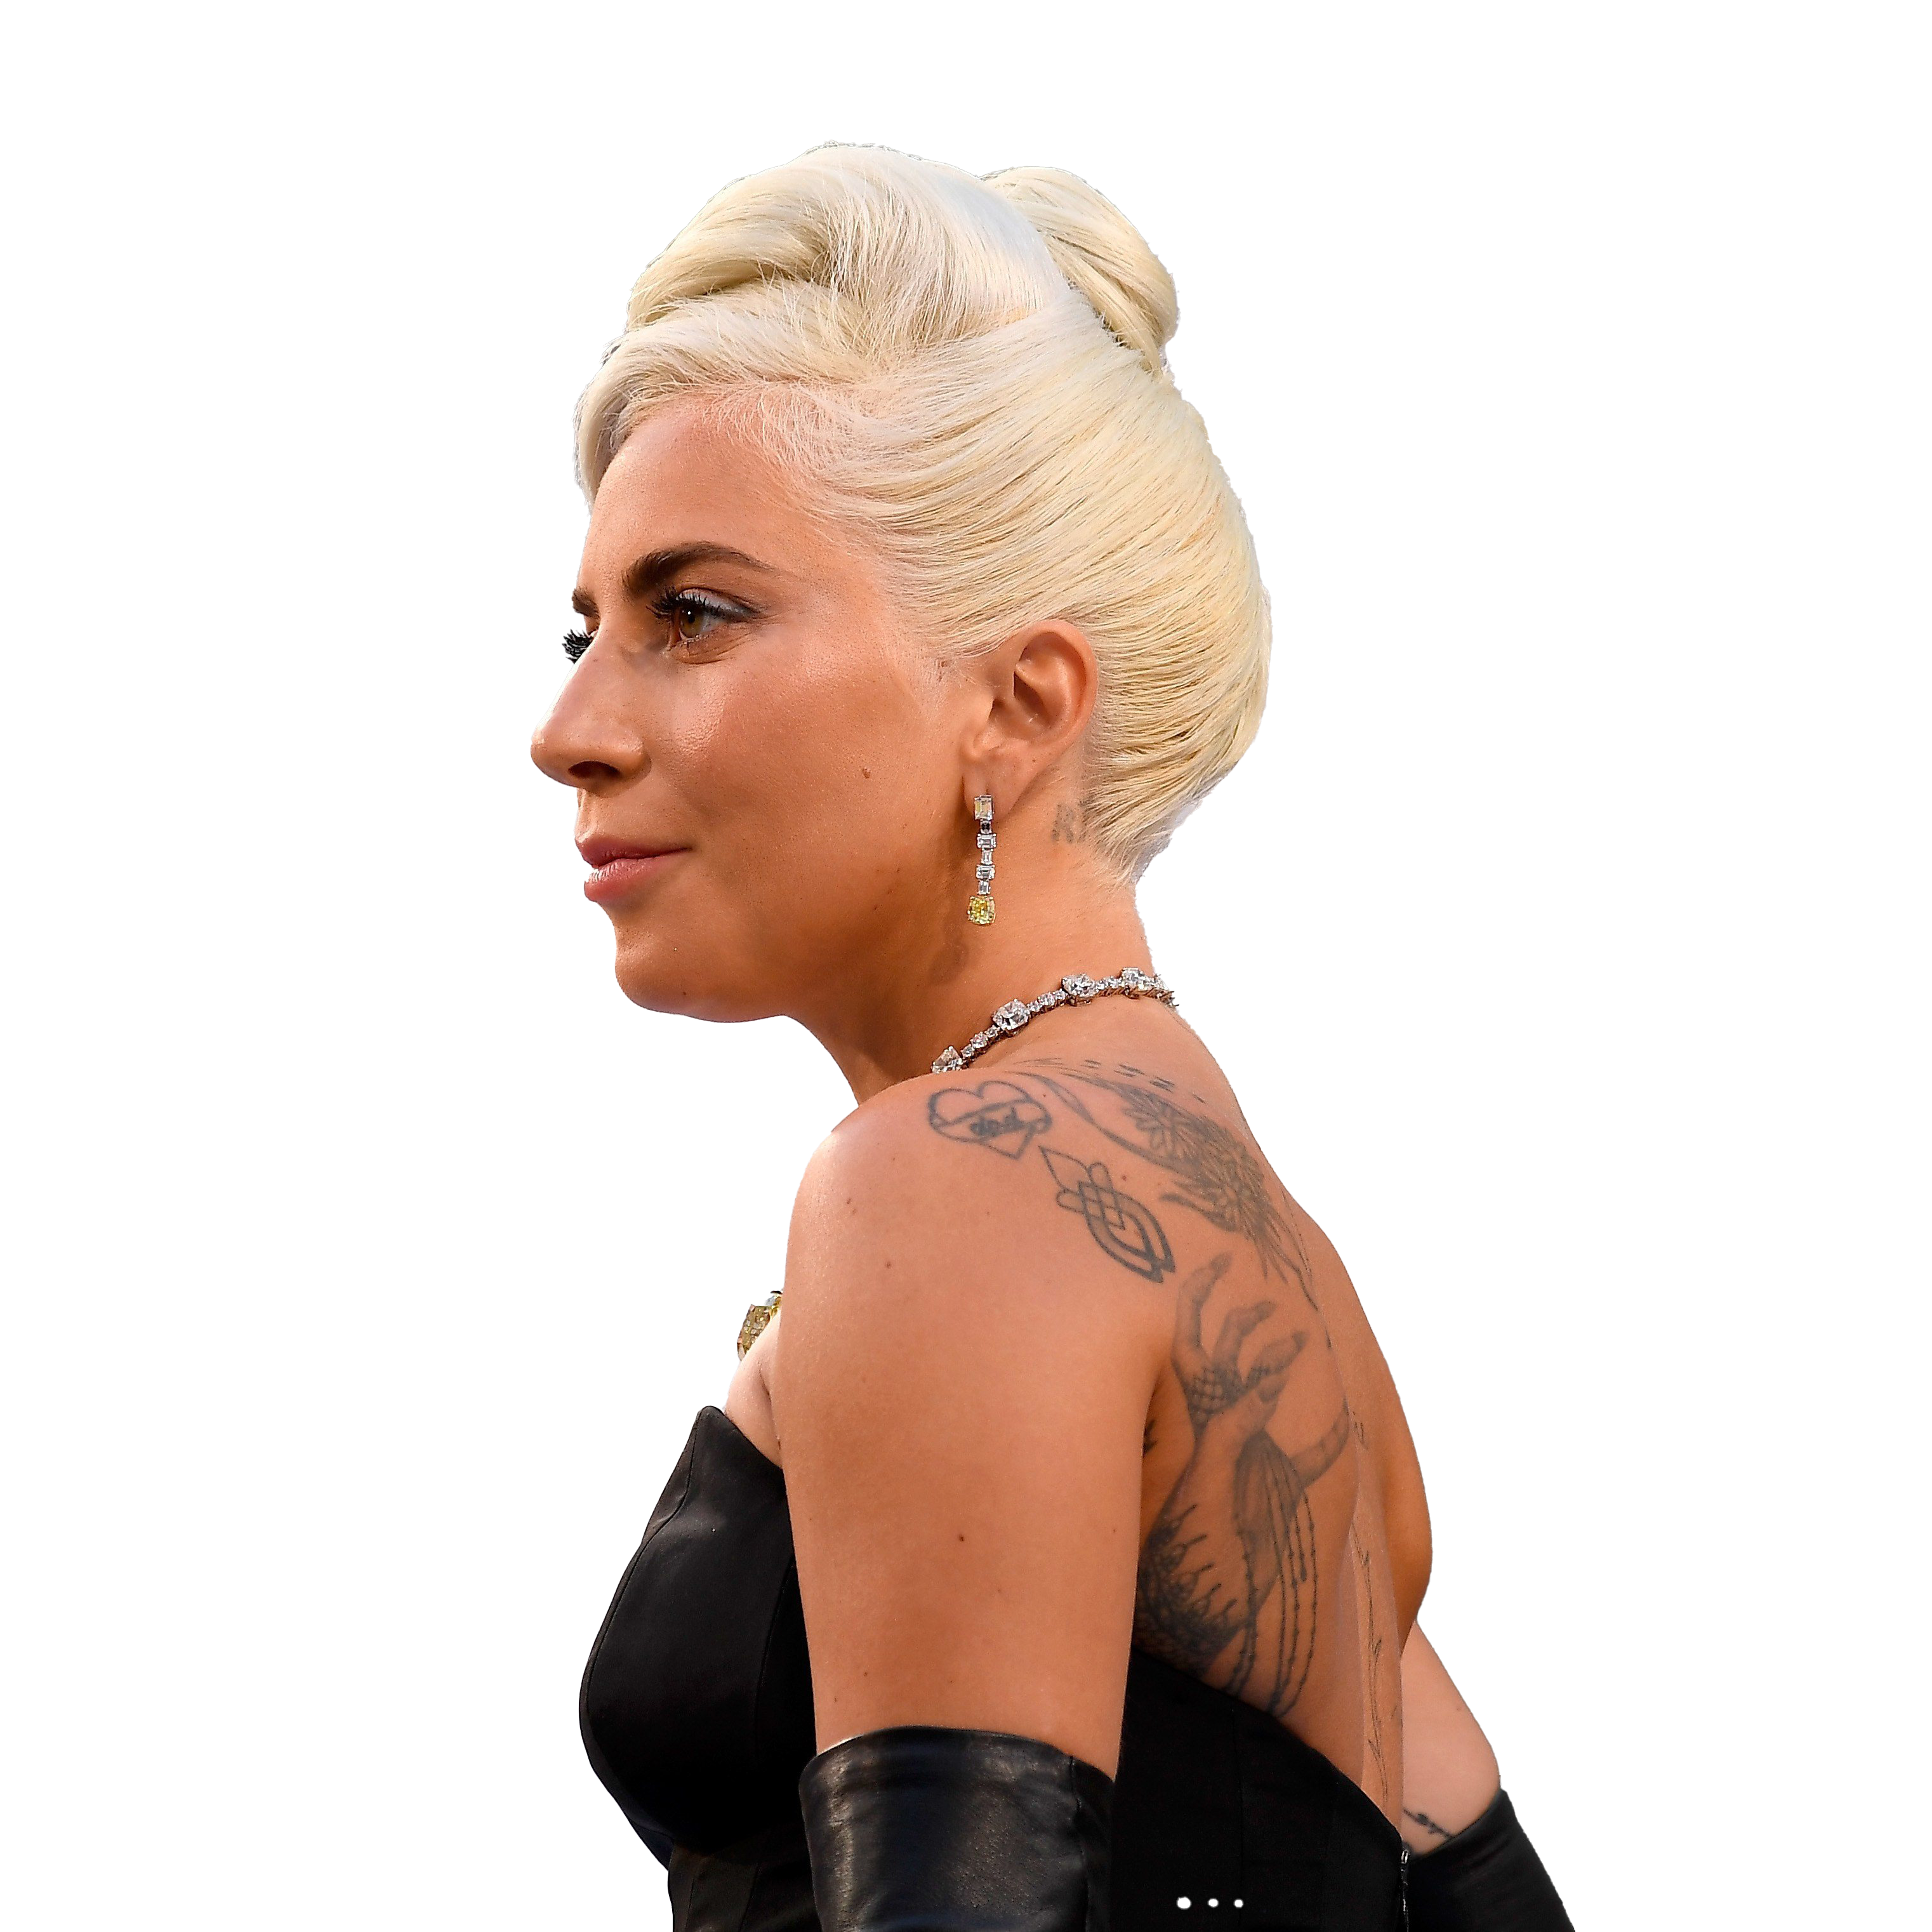 Singer Lady Gaga Free PNG Image | PNG Arts